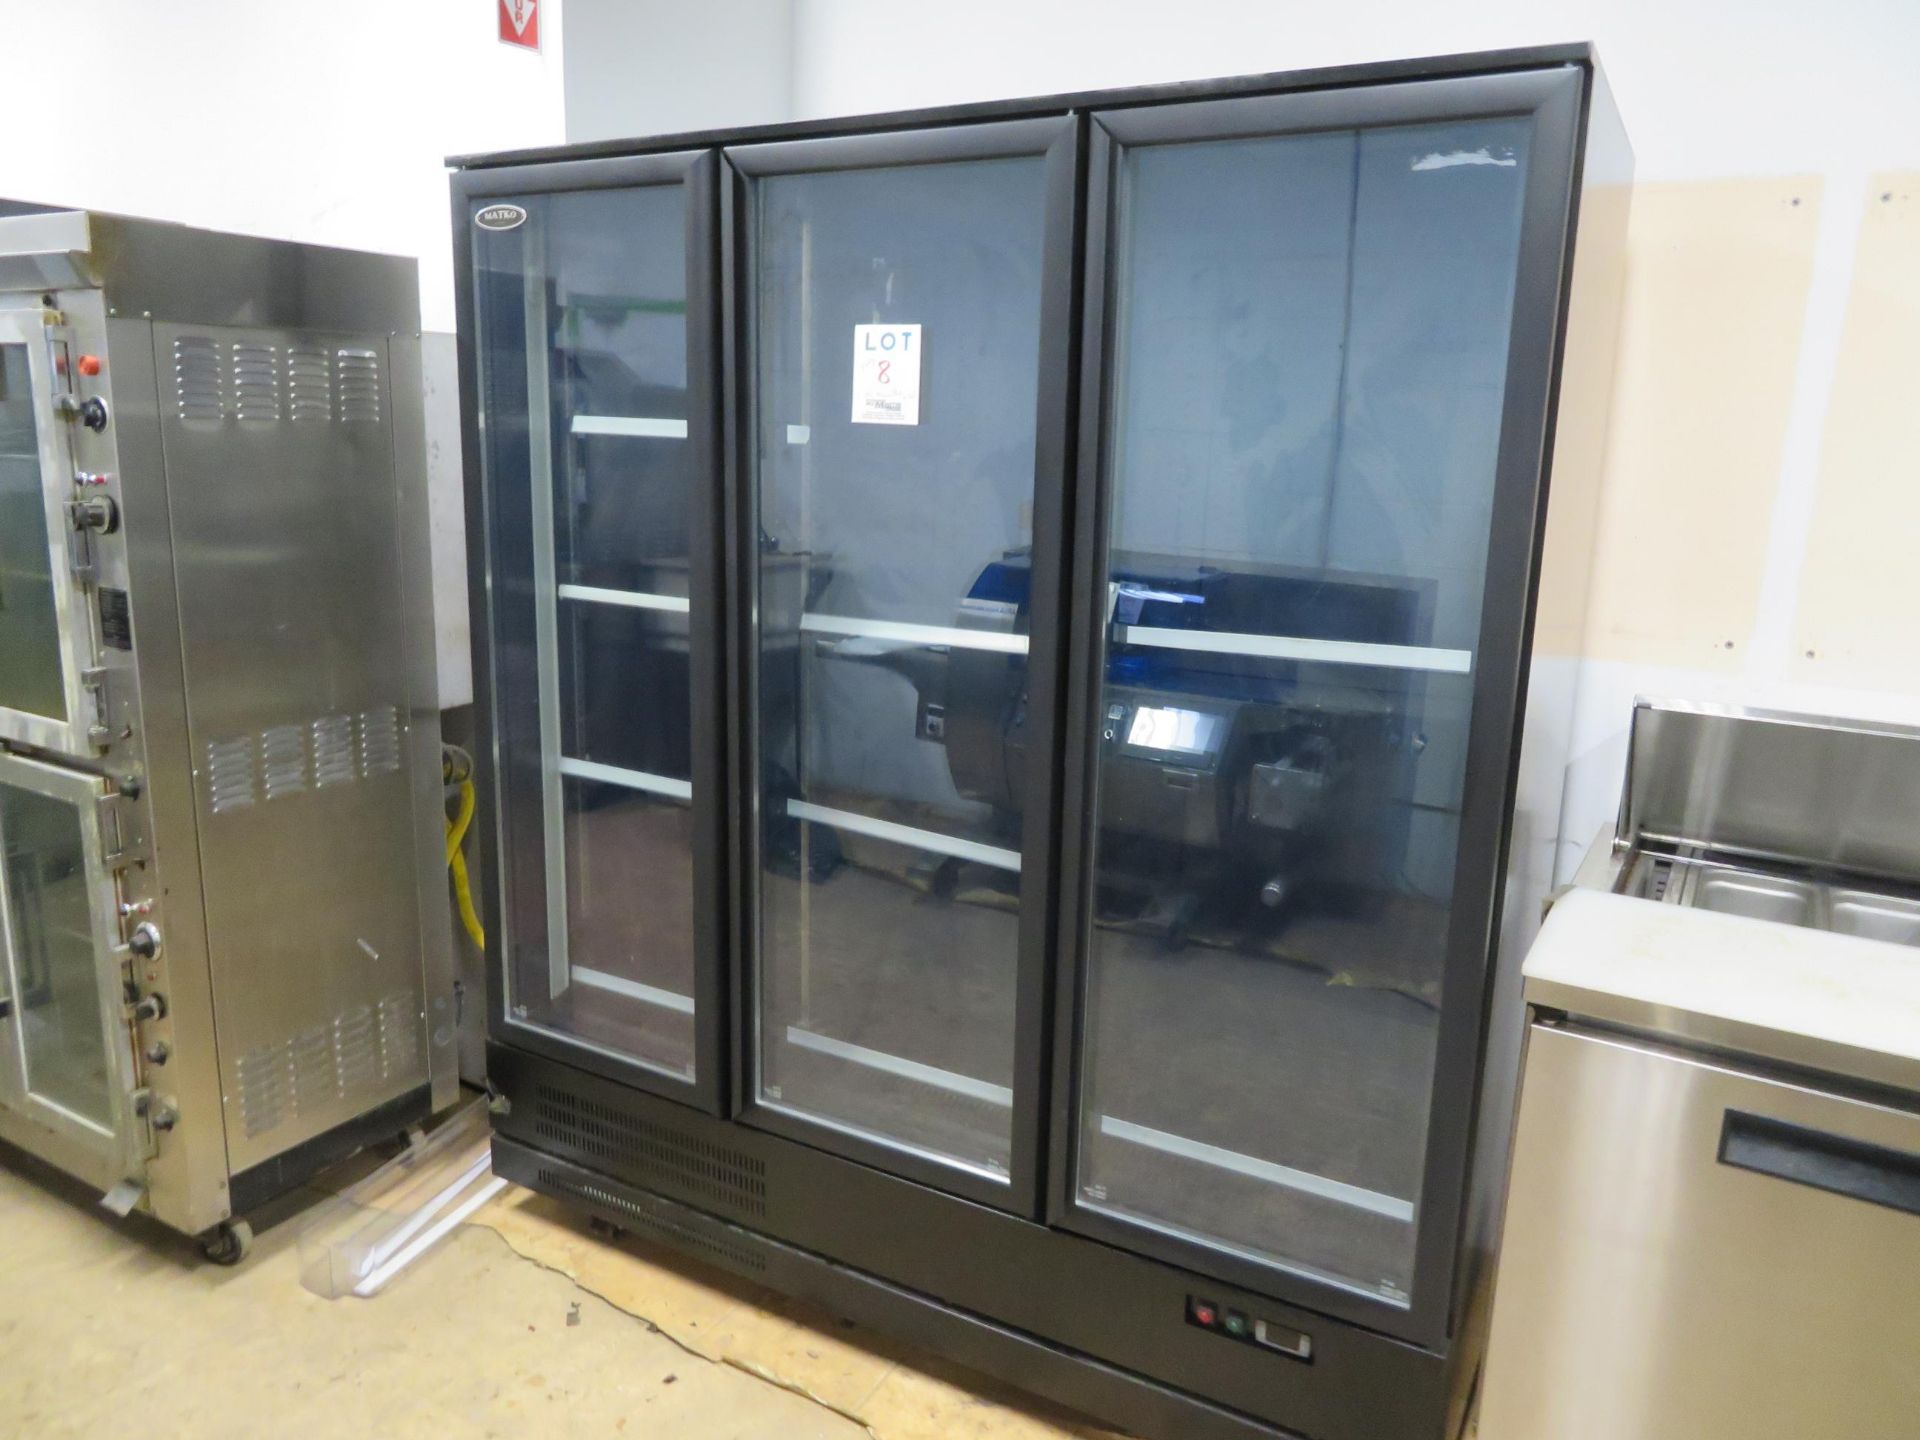 MATKO upright 3 door glass refrigerator on wheels, Mod # RIC-53B, approx. 70"w x 30"d x 79"h